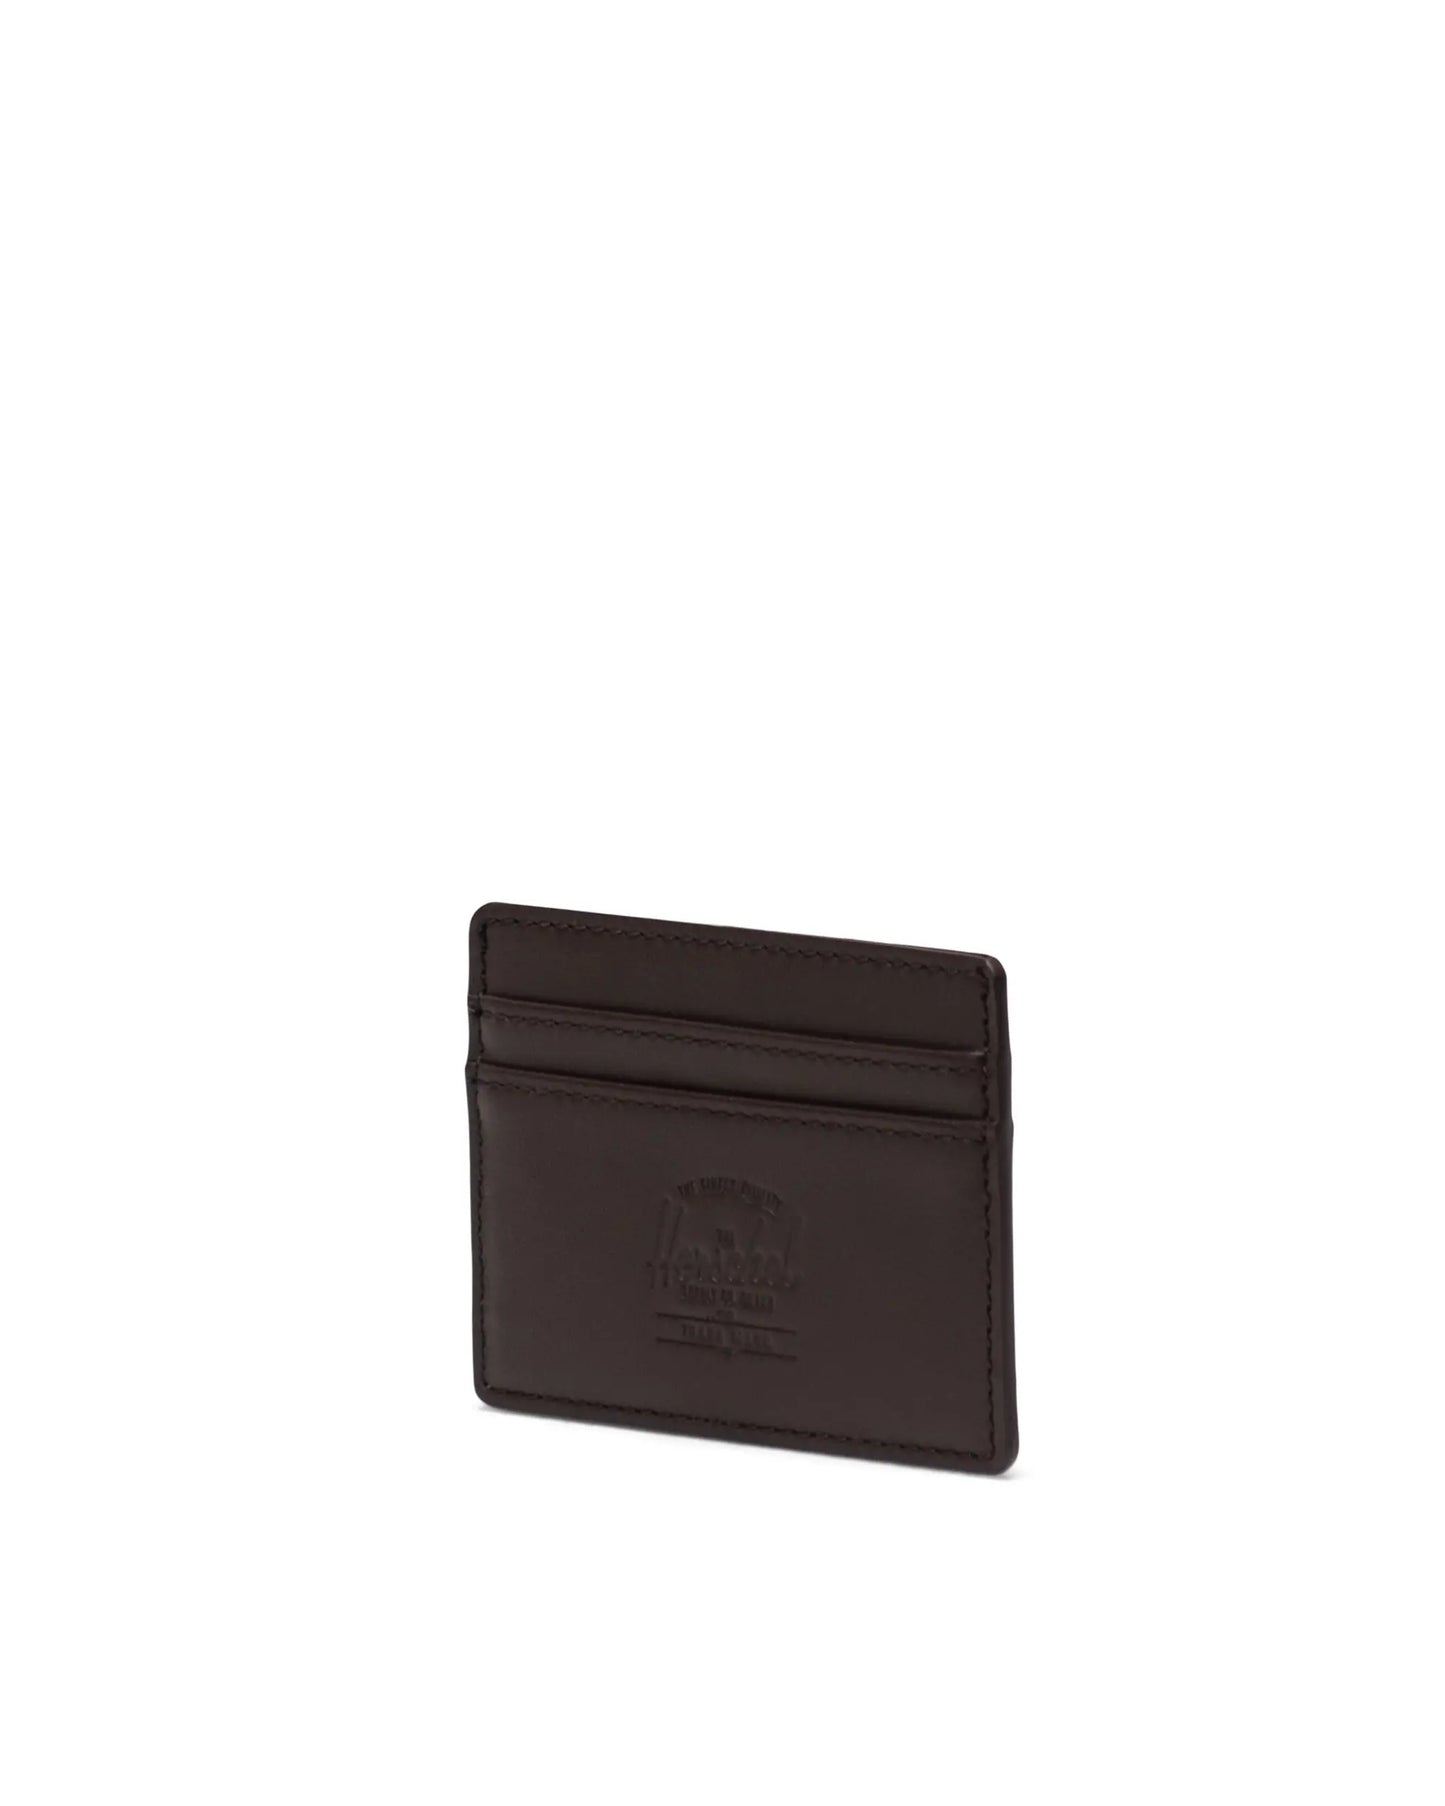 Herschel Charlie Cardholder Wallet Leather